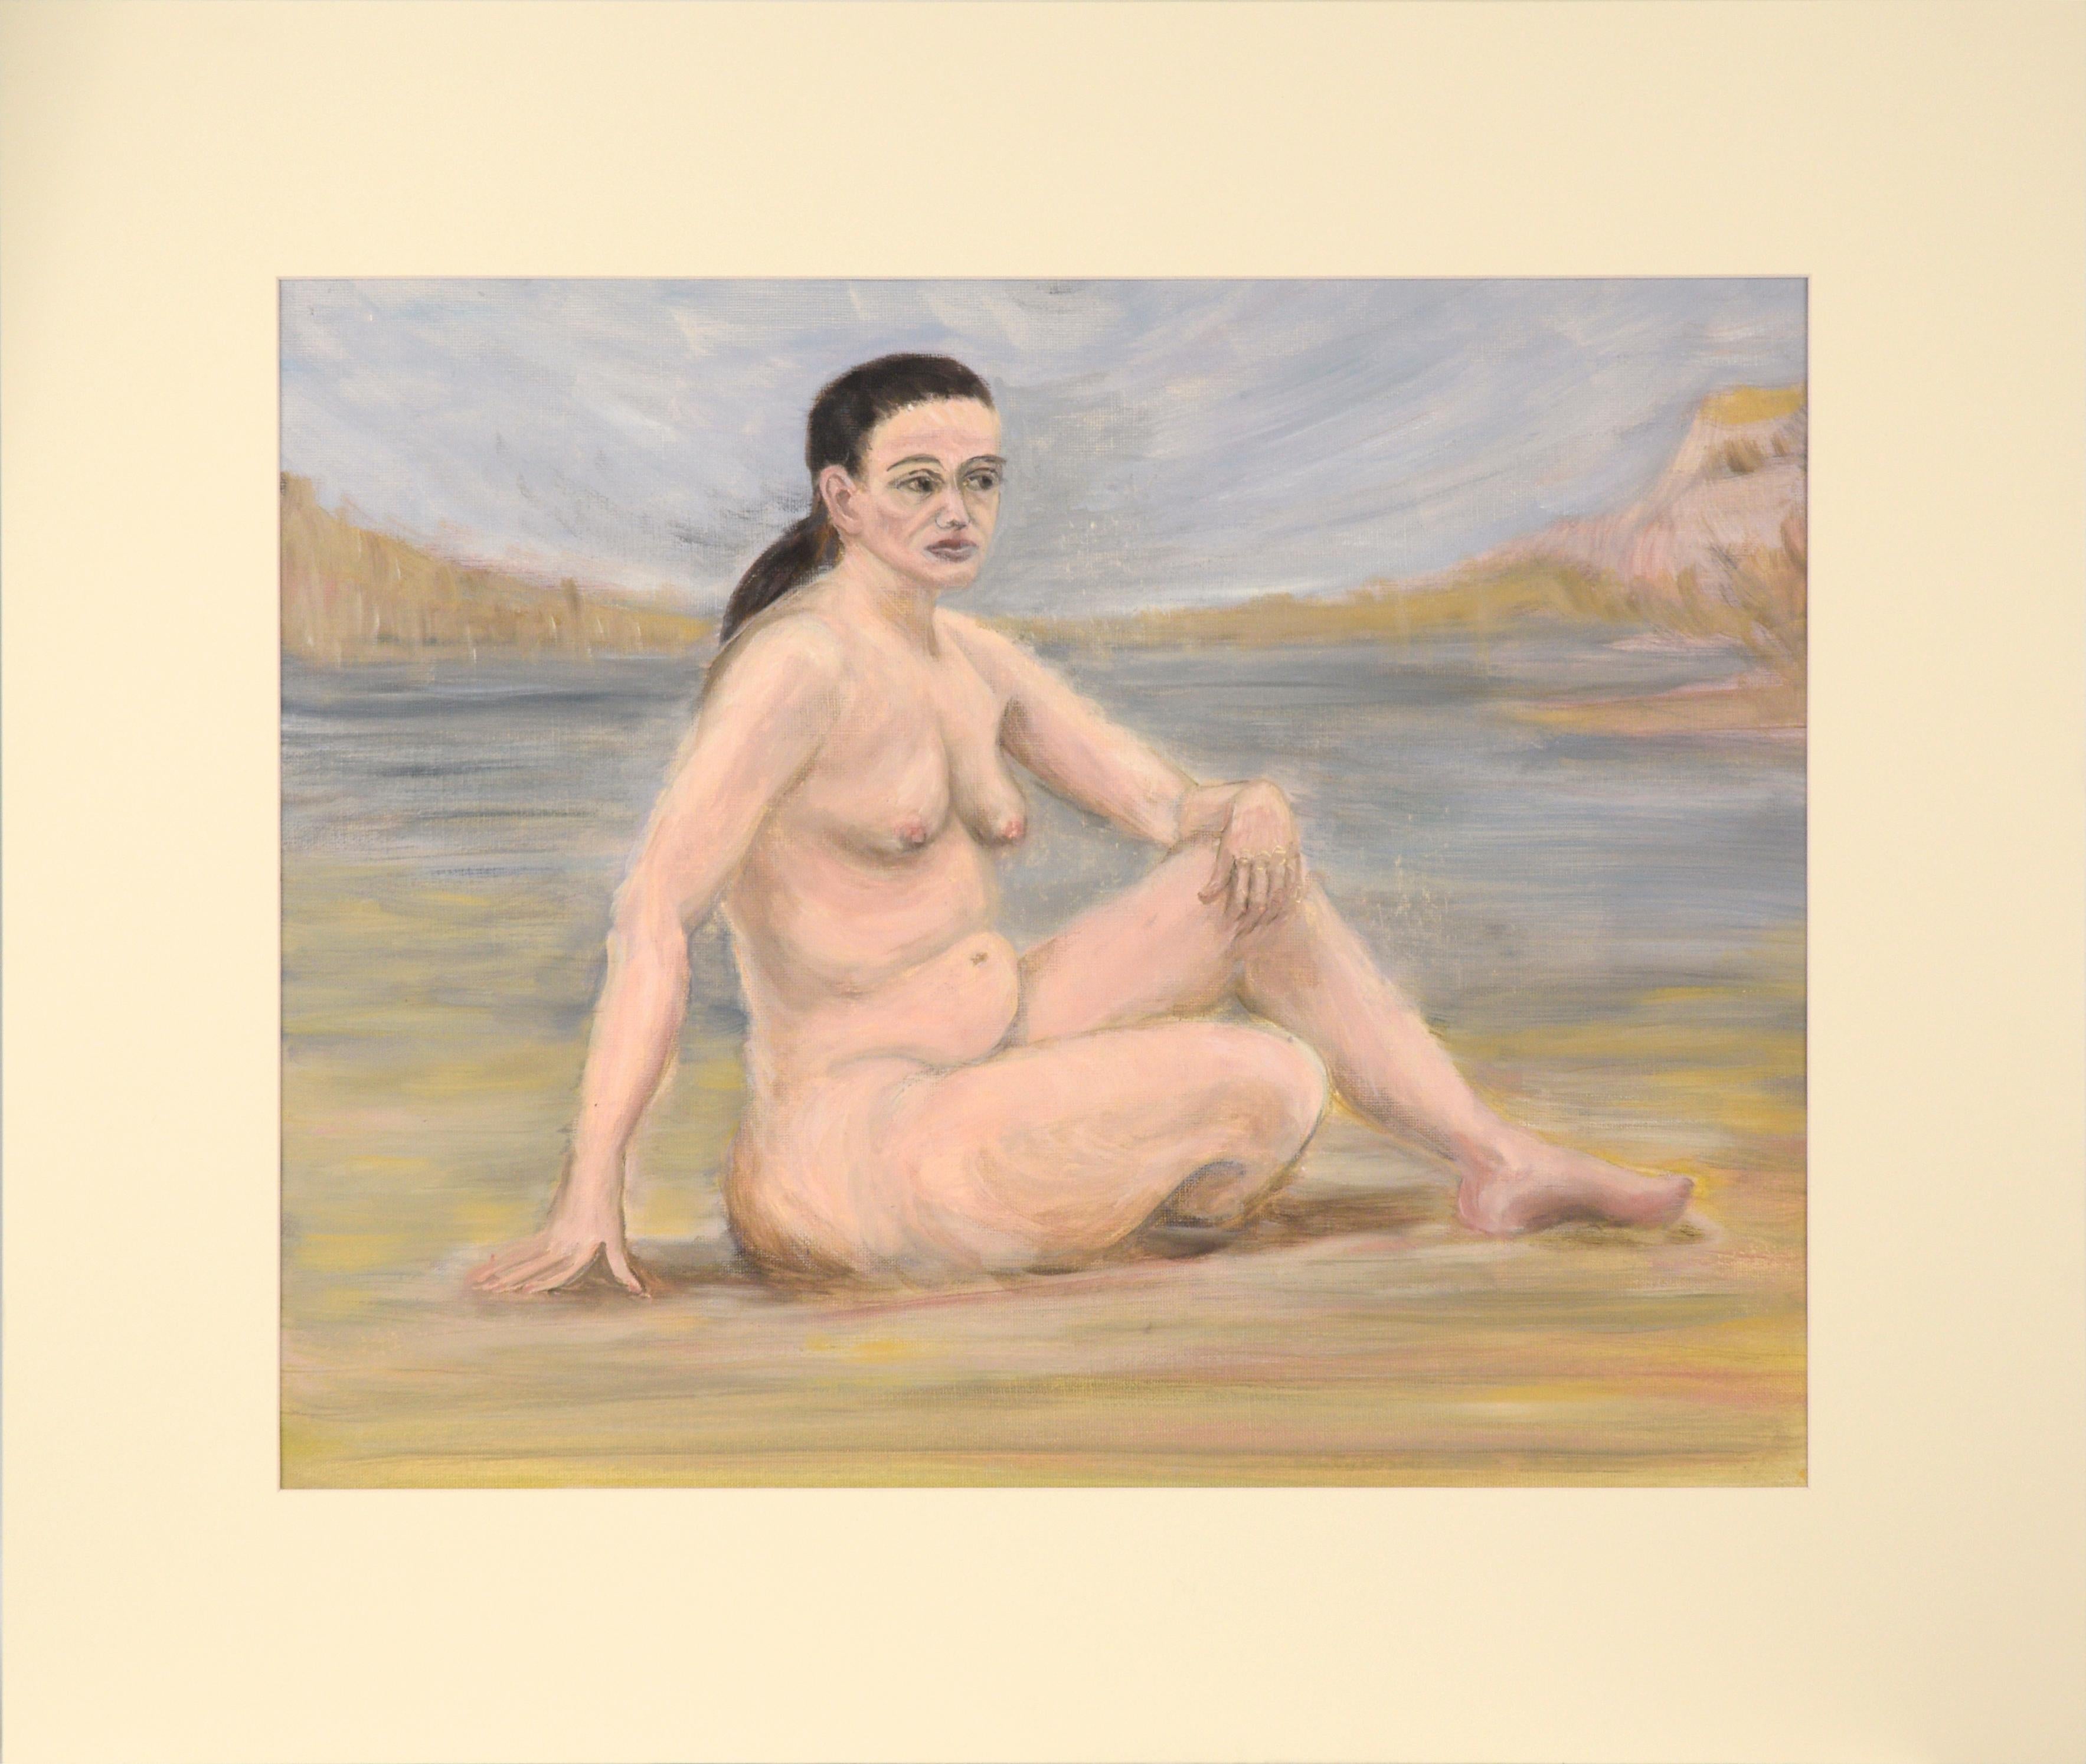 Femme au lac, étude de figure nue de la région de la baie du milieu du siècle dernier 